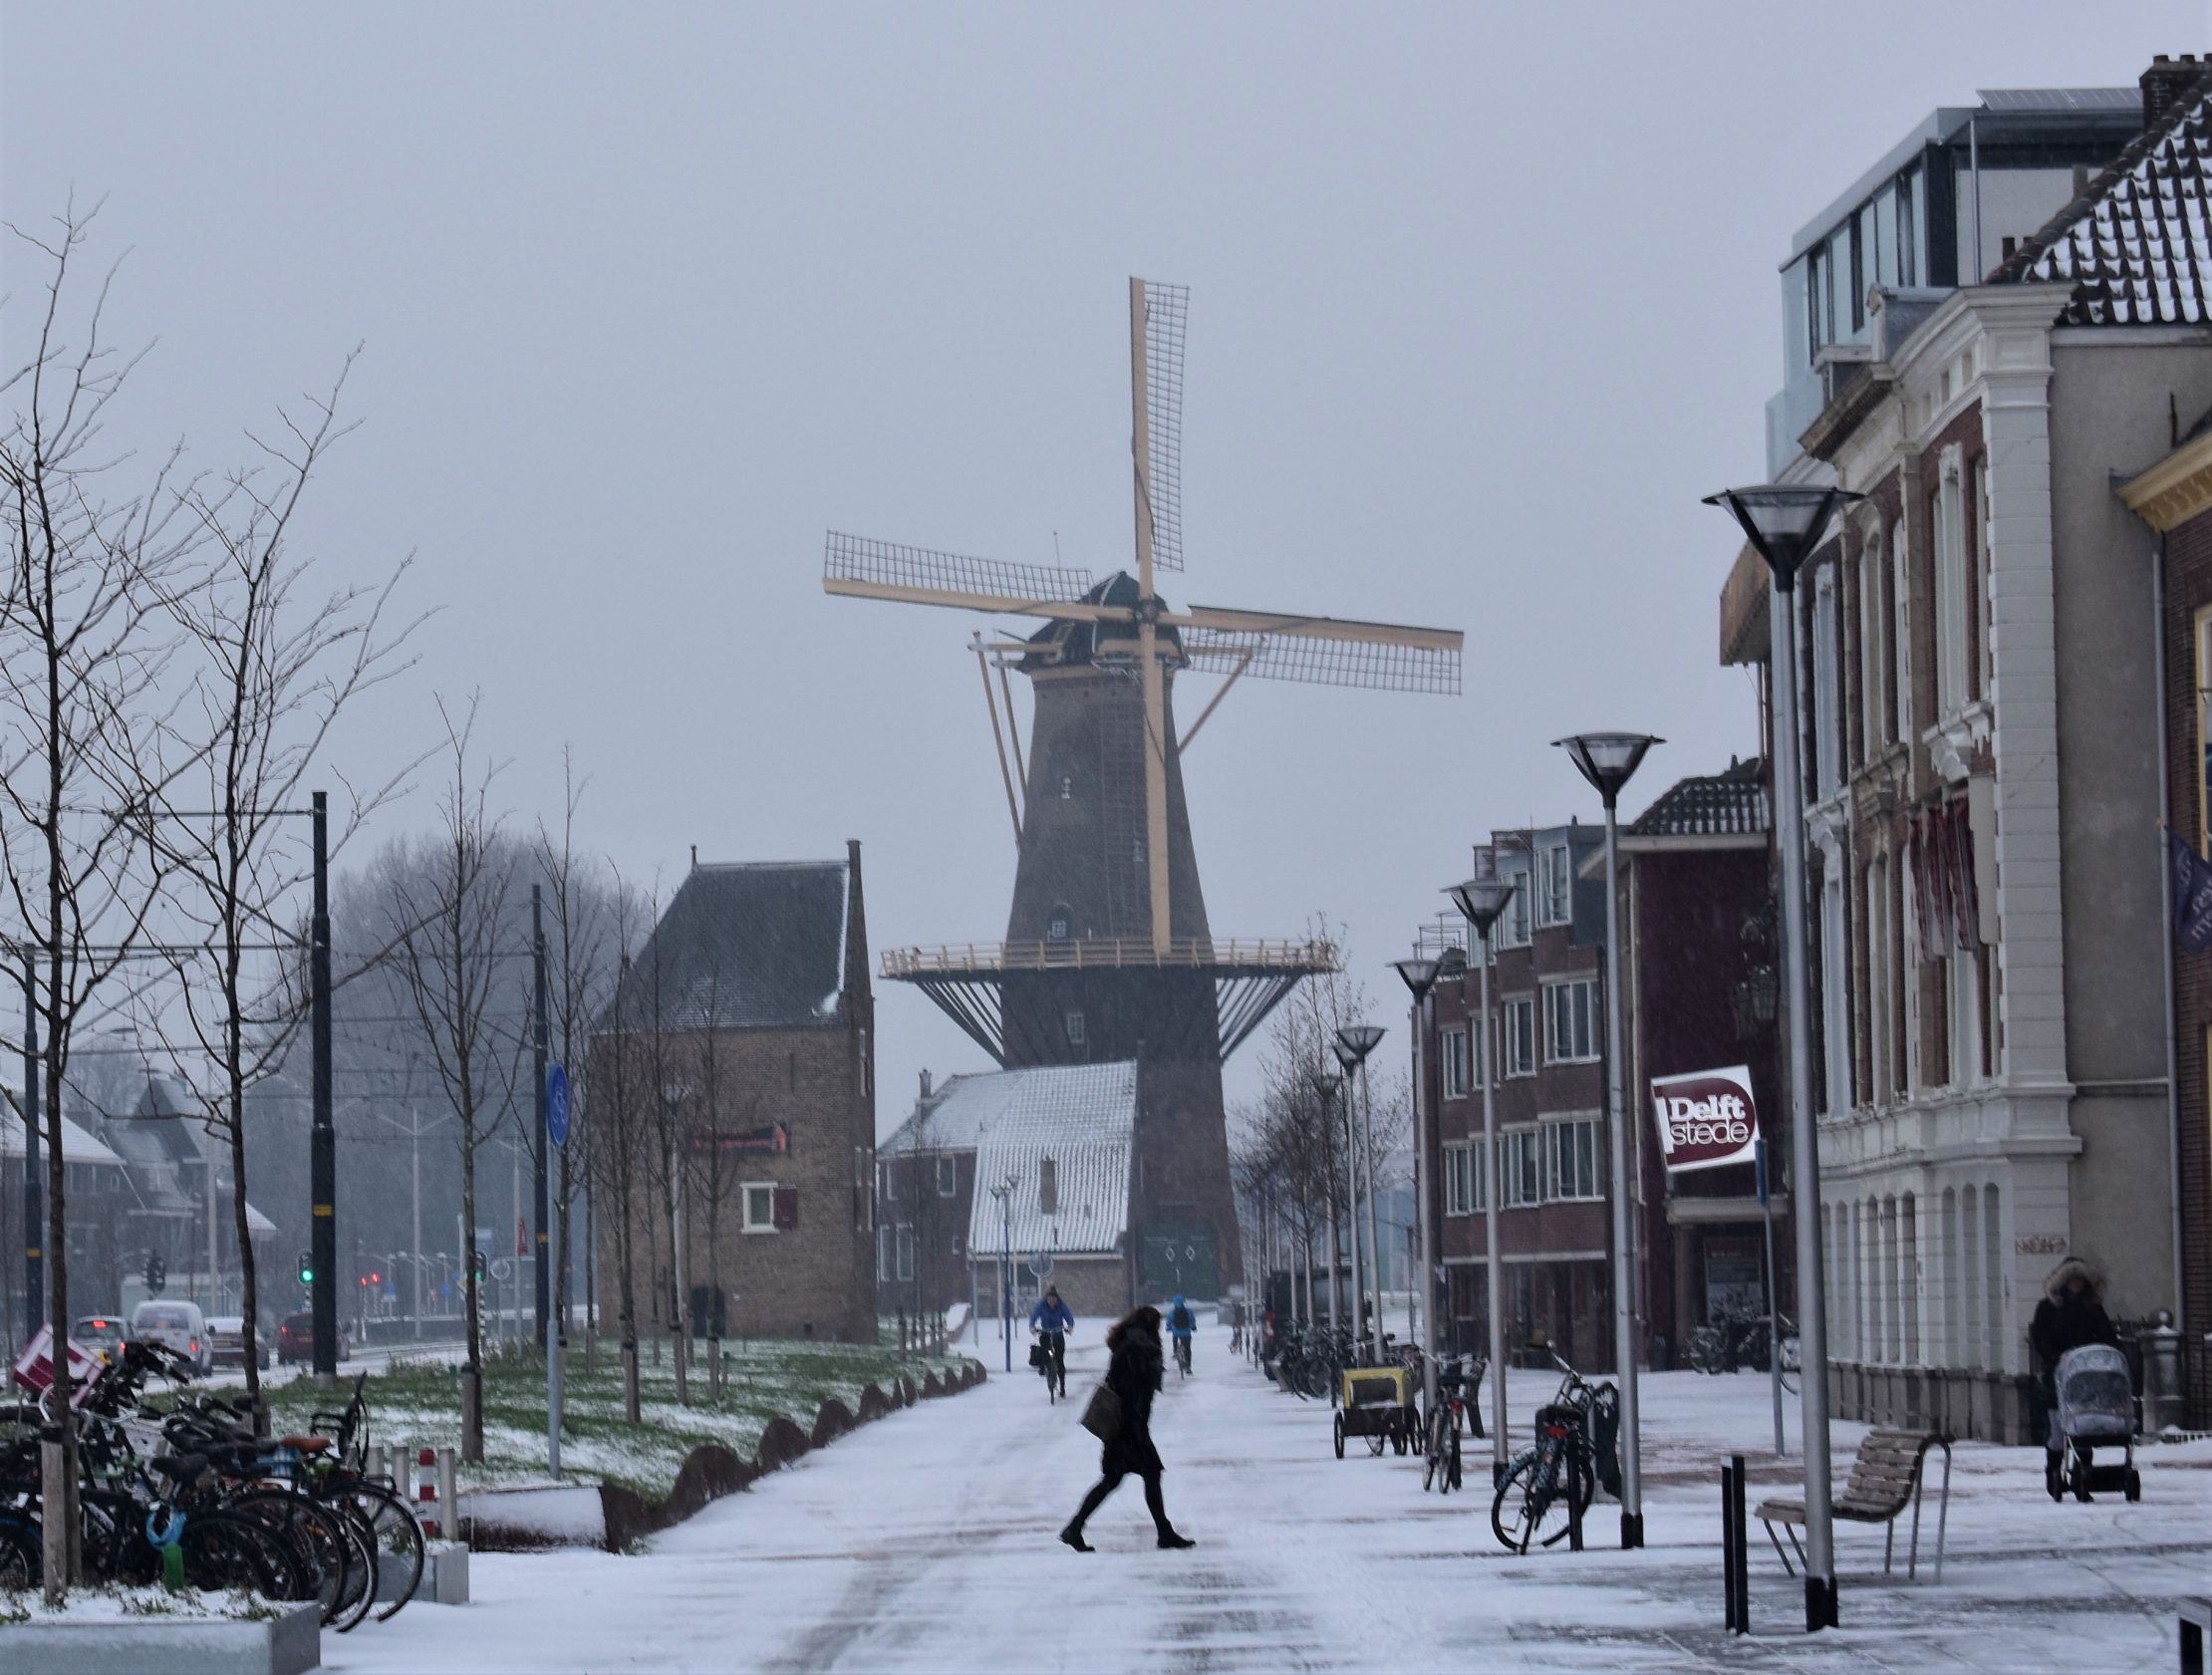 Snow in Delft